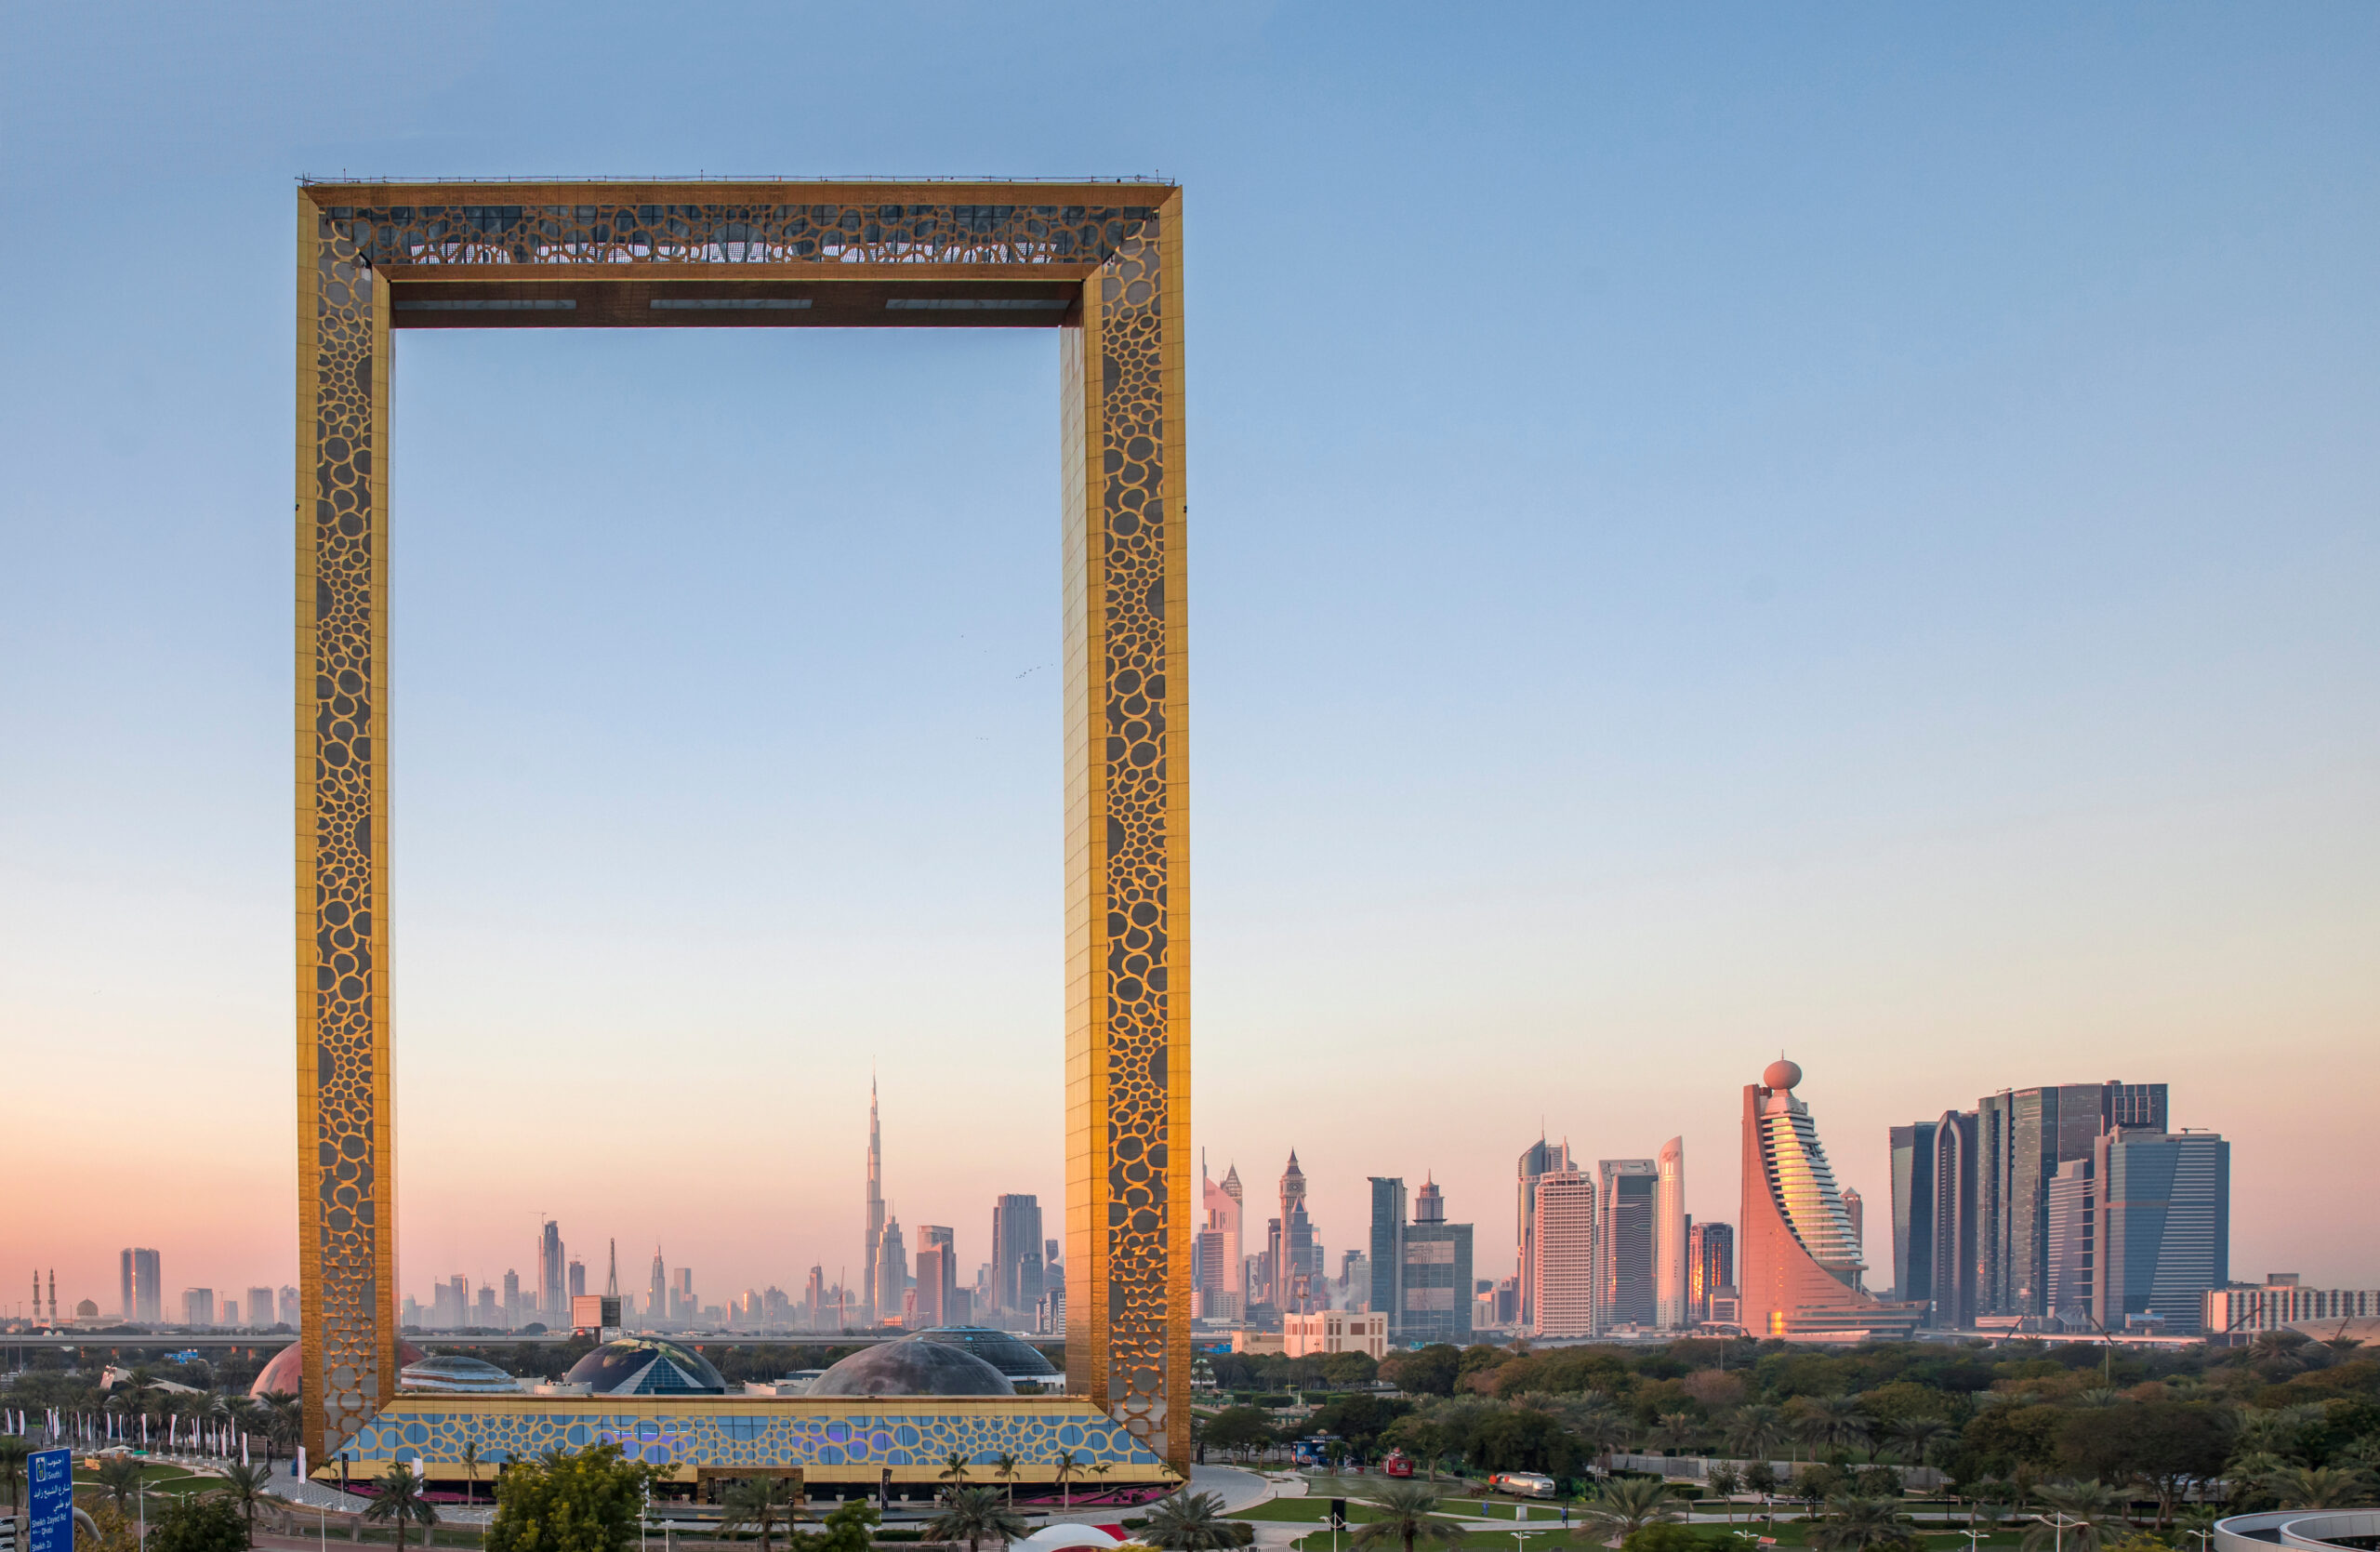 History of Dubai - Dubai Frame